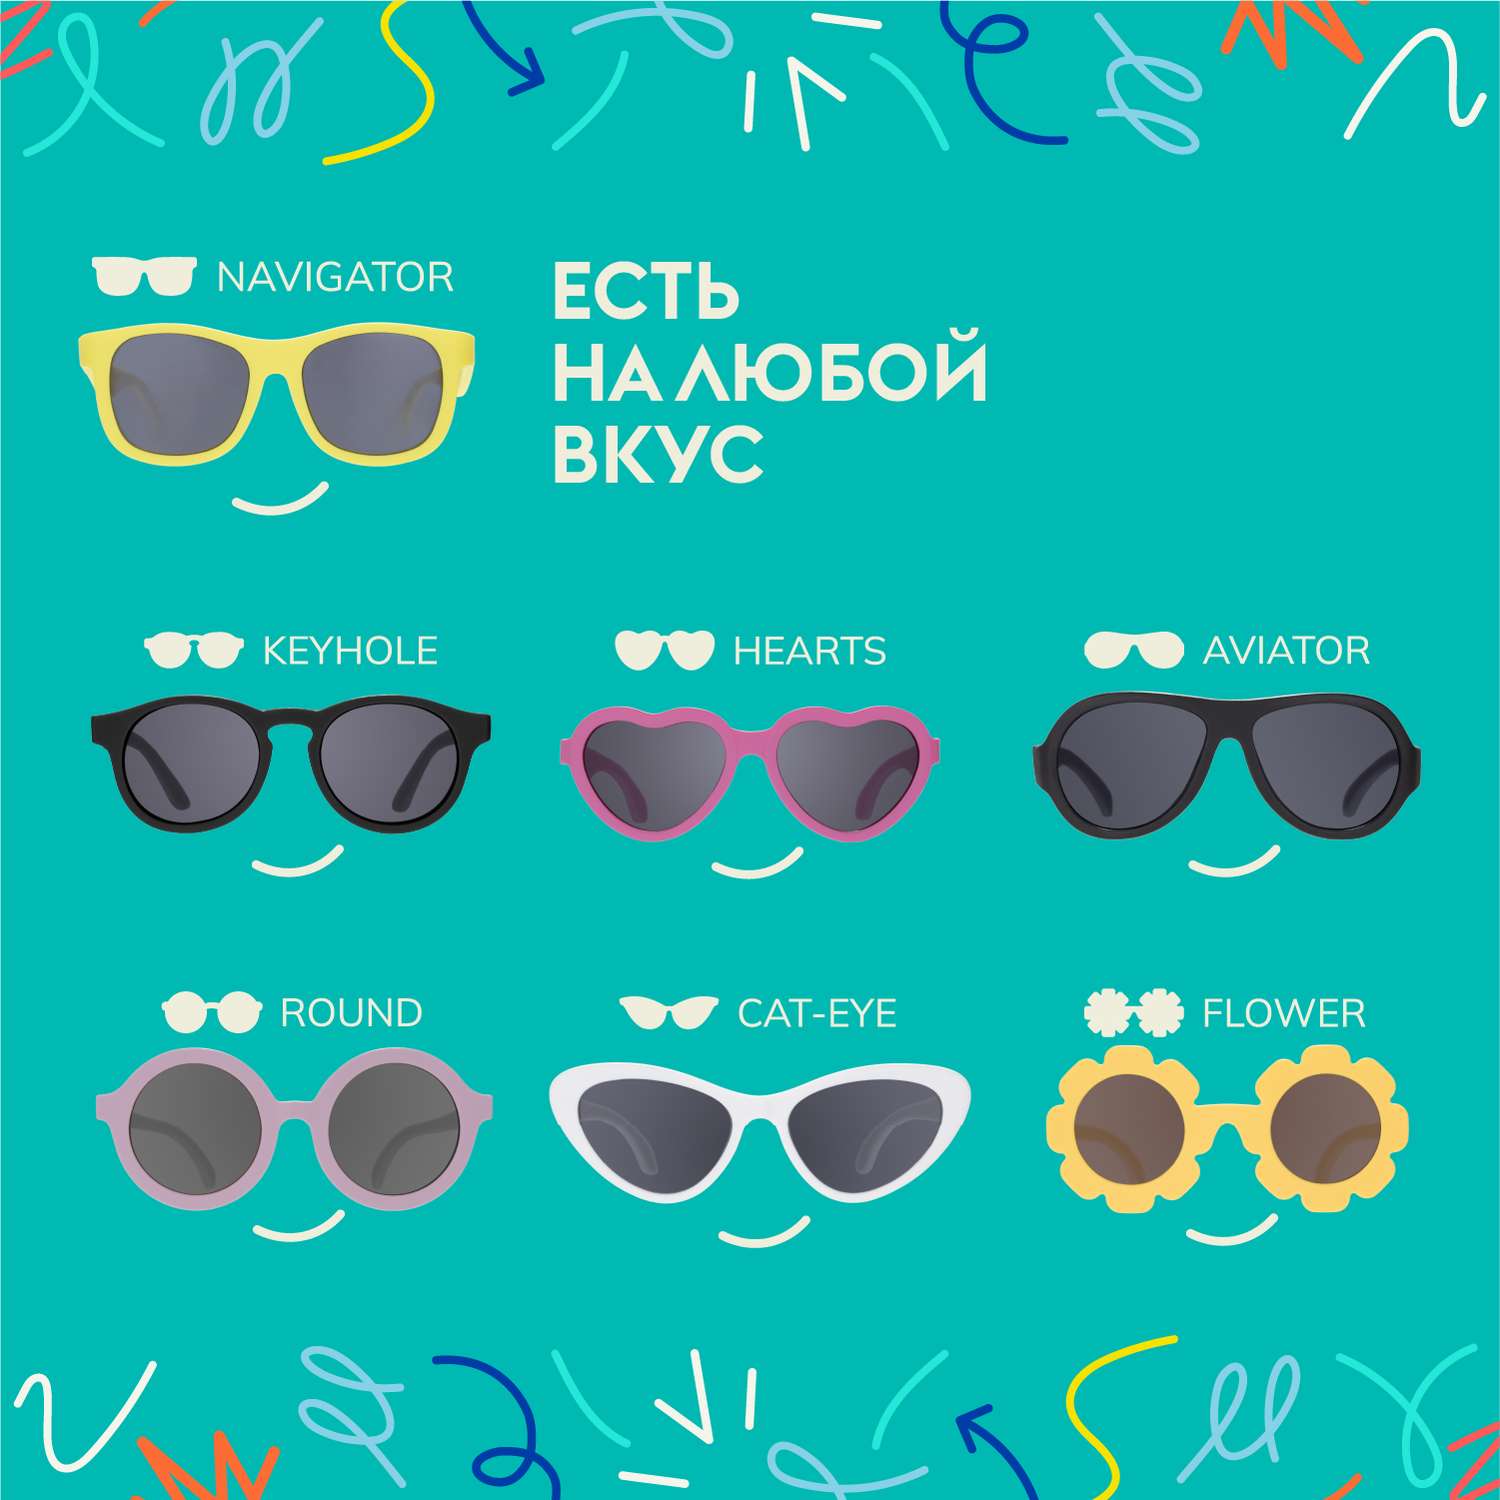 Солнцезащитные очки Babiators Aviator Попсовый розовый 3-5 BAB-047 - фото 7